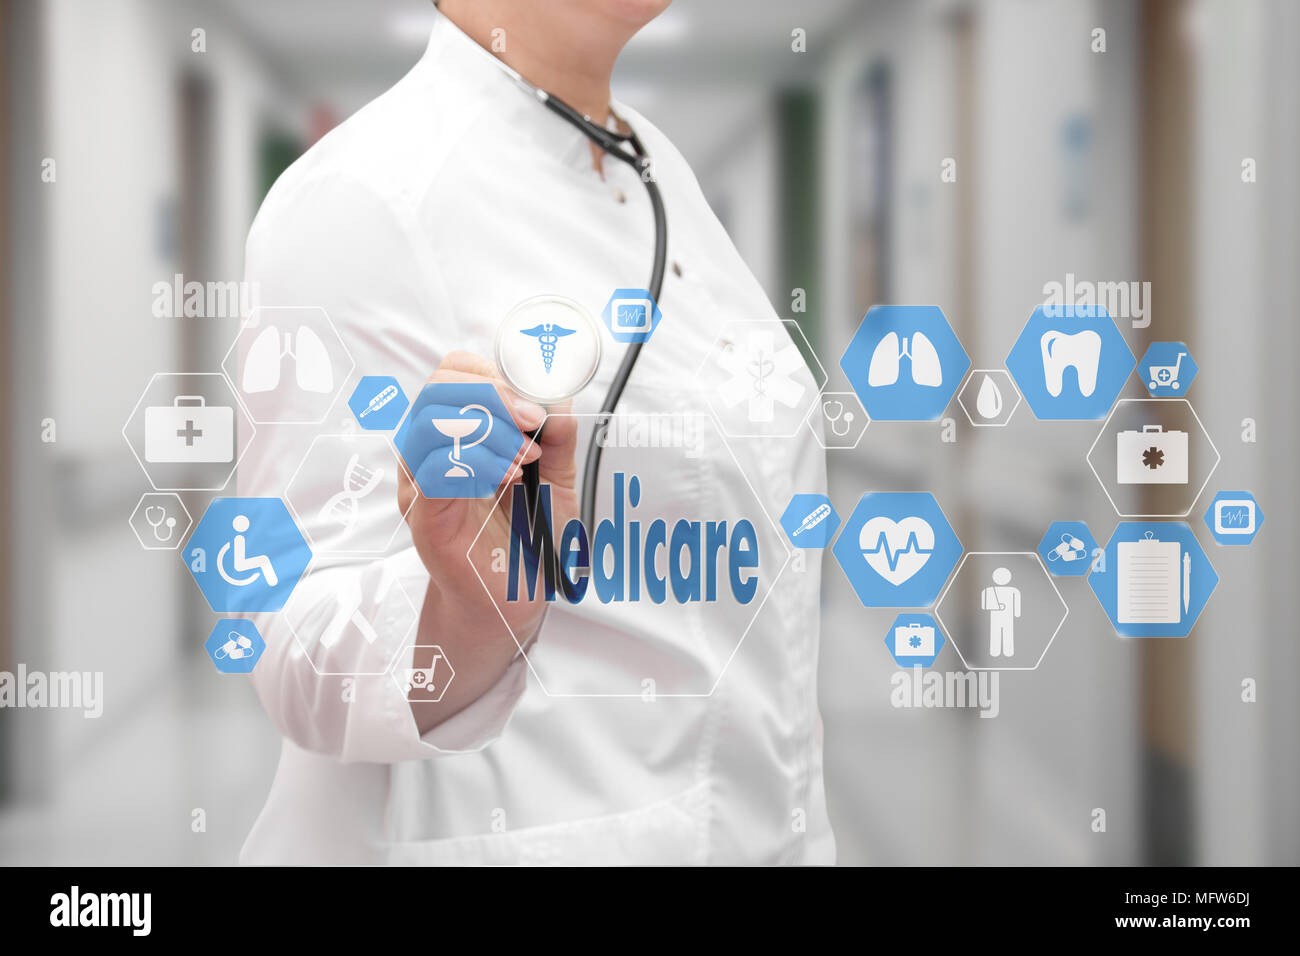 Arzt mit Stethoskop und Medicare Symbol in der Medizinischen Netzwerkverbindung auf dem virtuellen Bildschirm am Krankenhaus Hintergrund. Technik und Medizin c Stockfoto